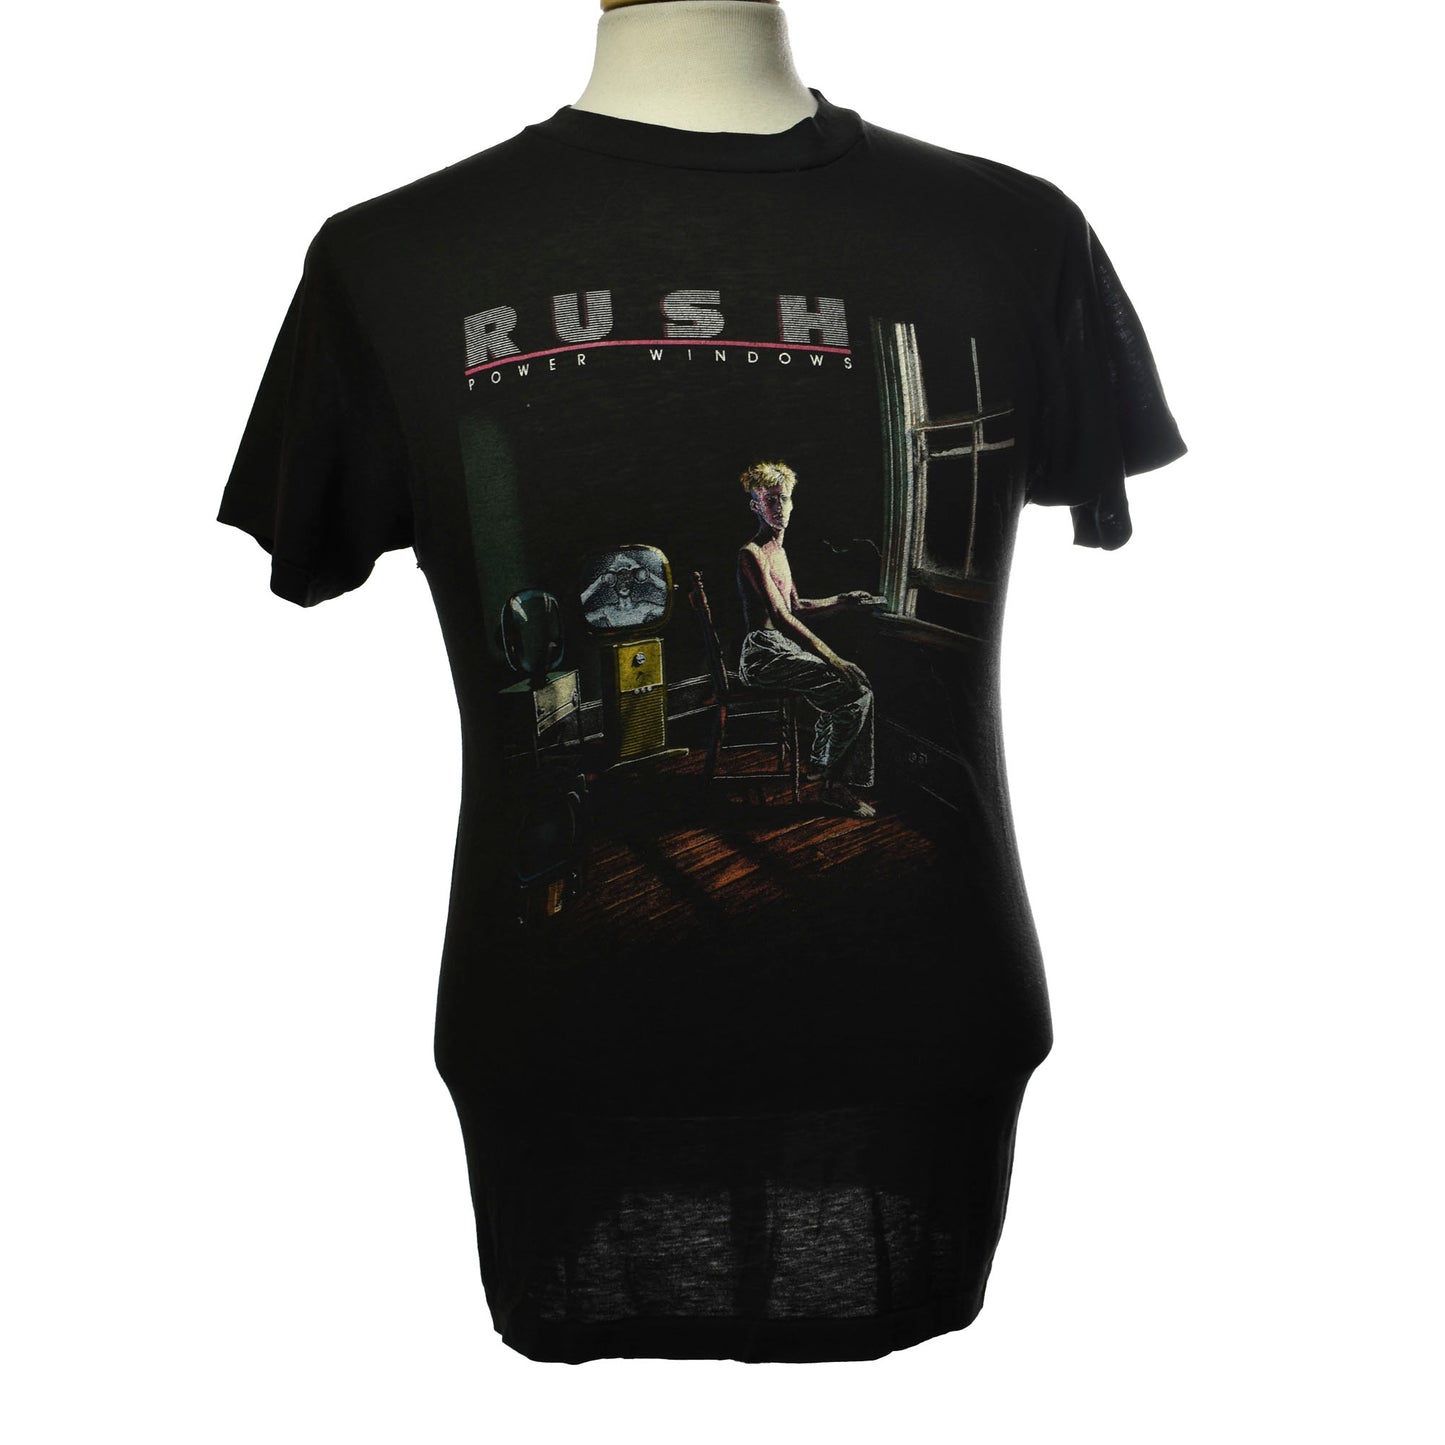 VIntage 1985/86 Rush Power Windows Tour Band Concert Single Stitch T-shirt